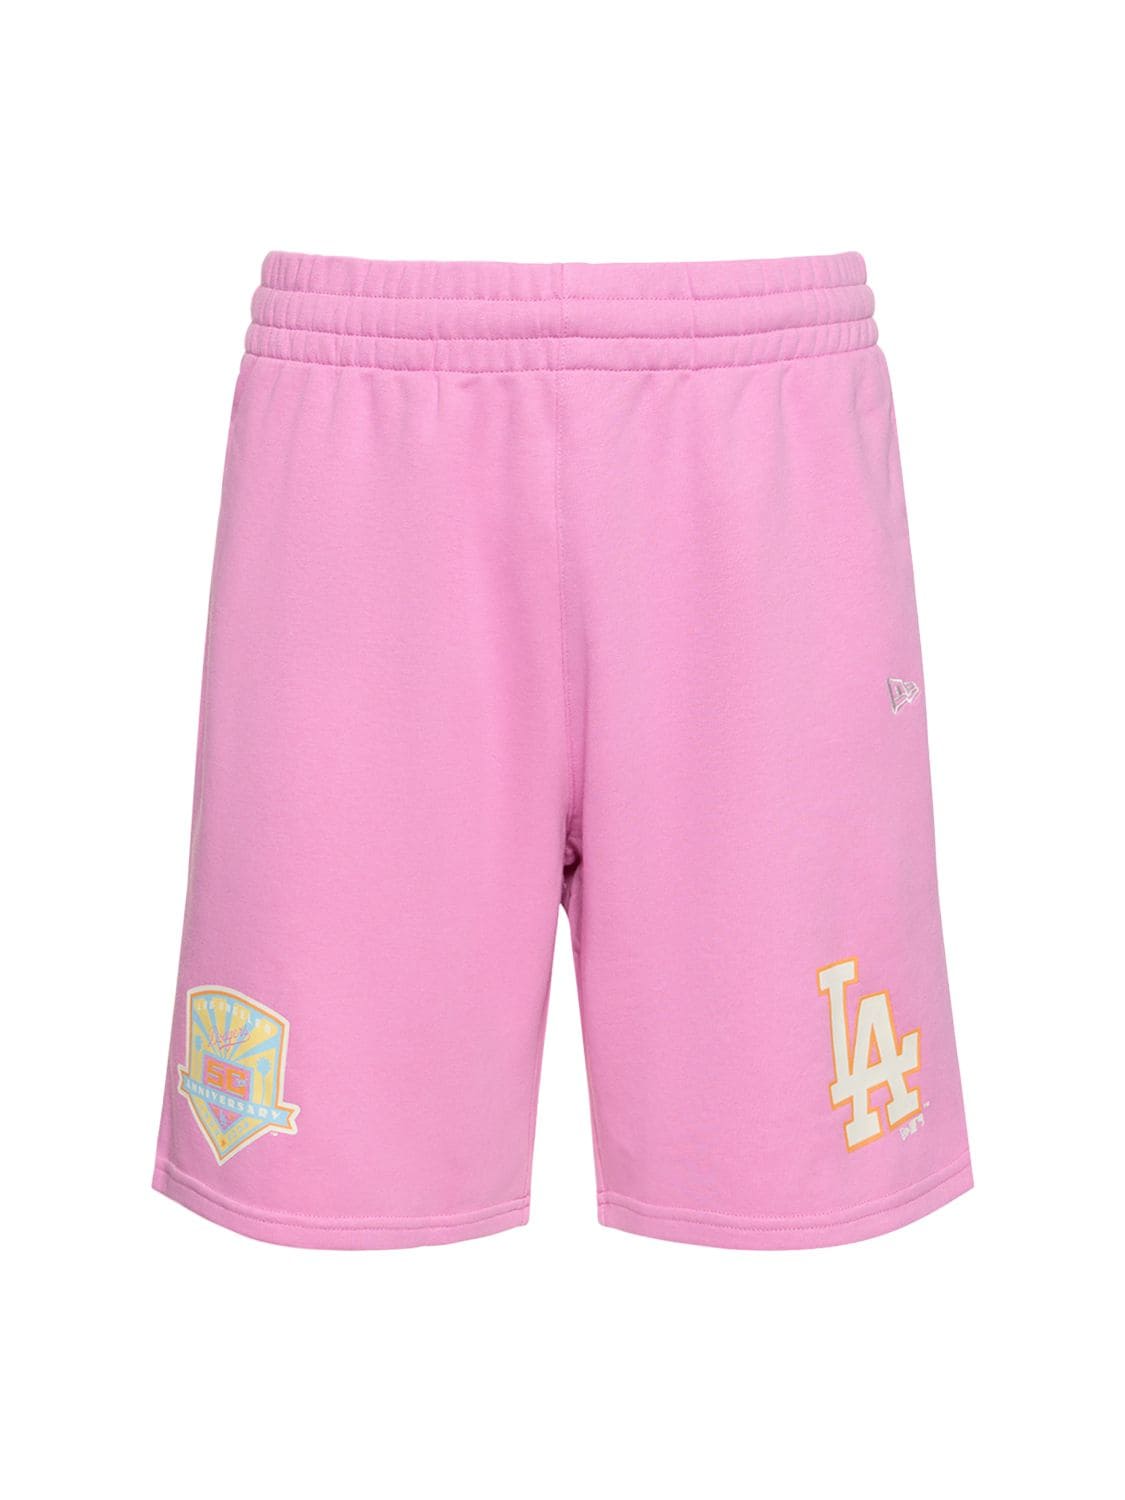 New Era L.a. Dodgers混棉短裤 In Pink